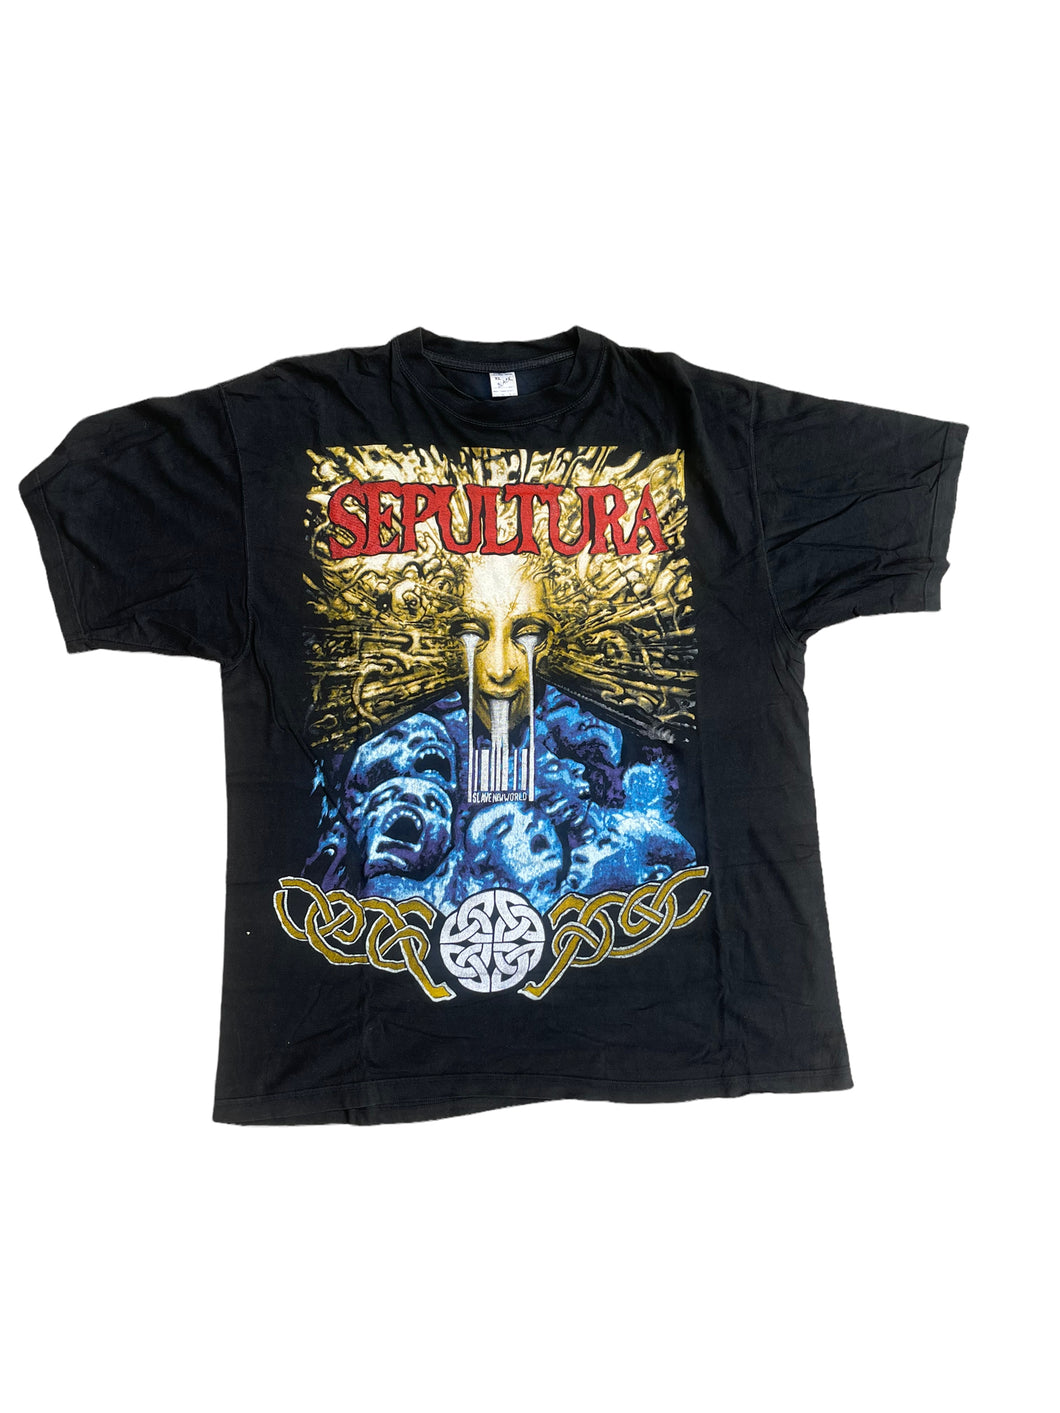 Sepultura Slave New World 1994 Single Band T-Shirt